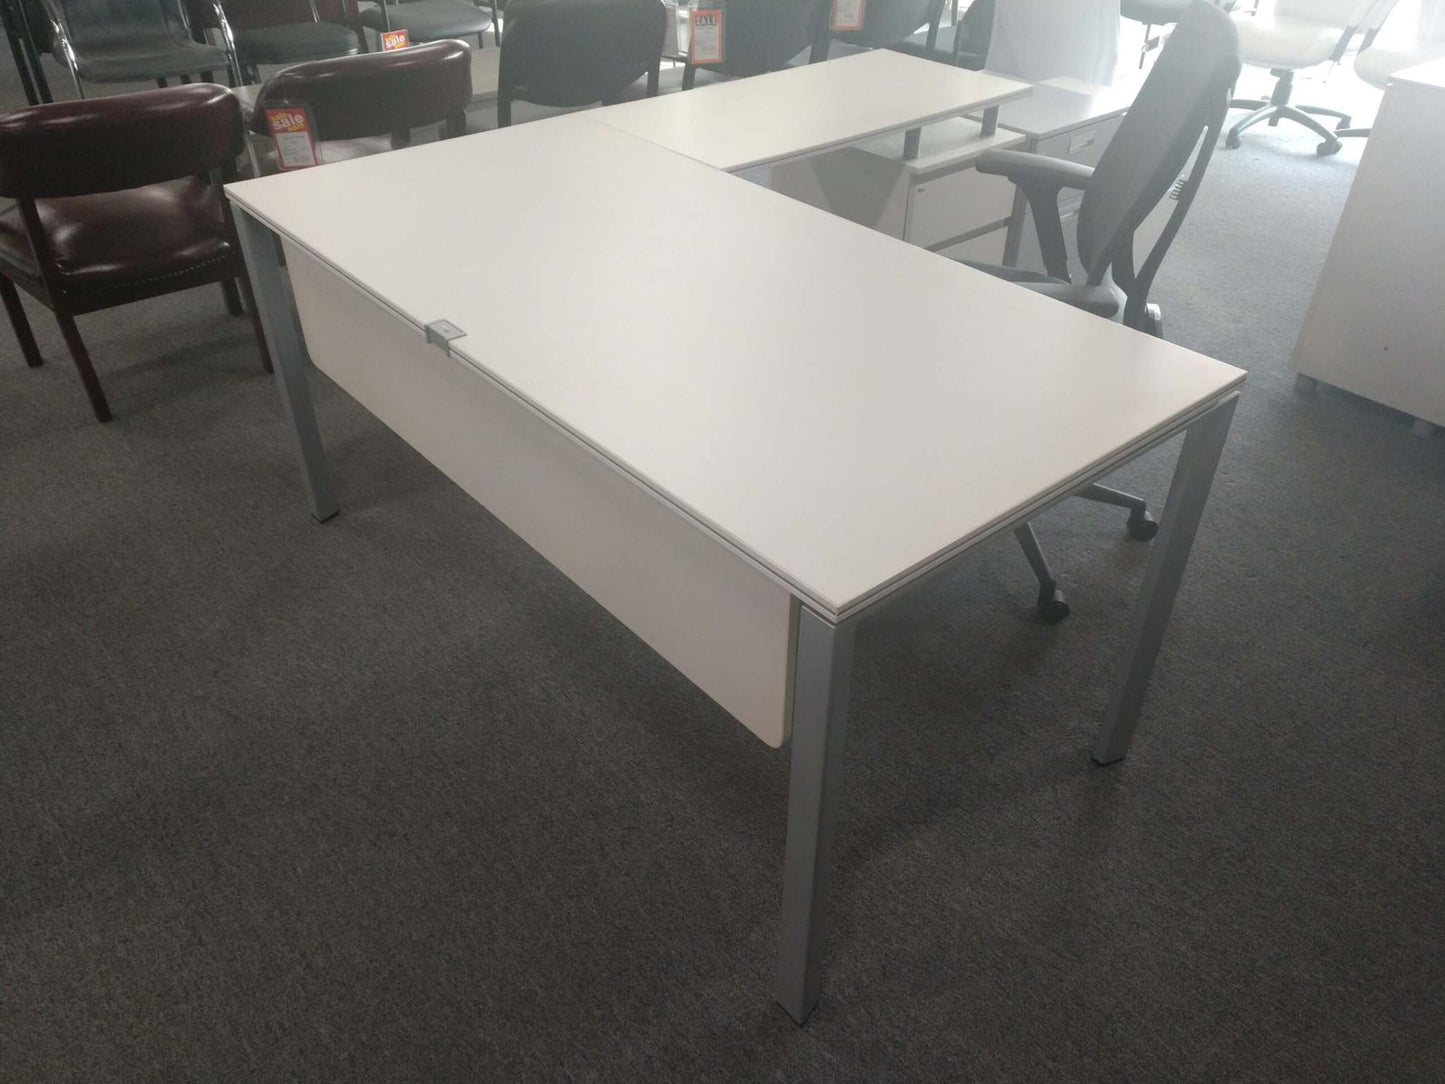 Desk Modesty Panel in White